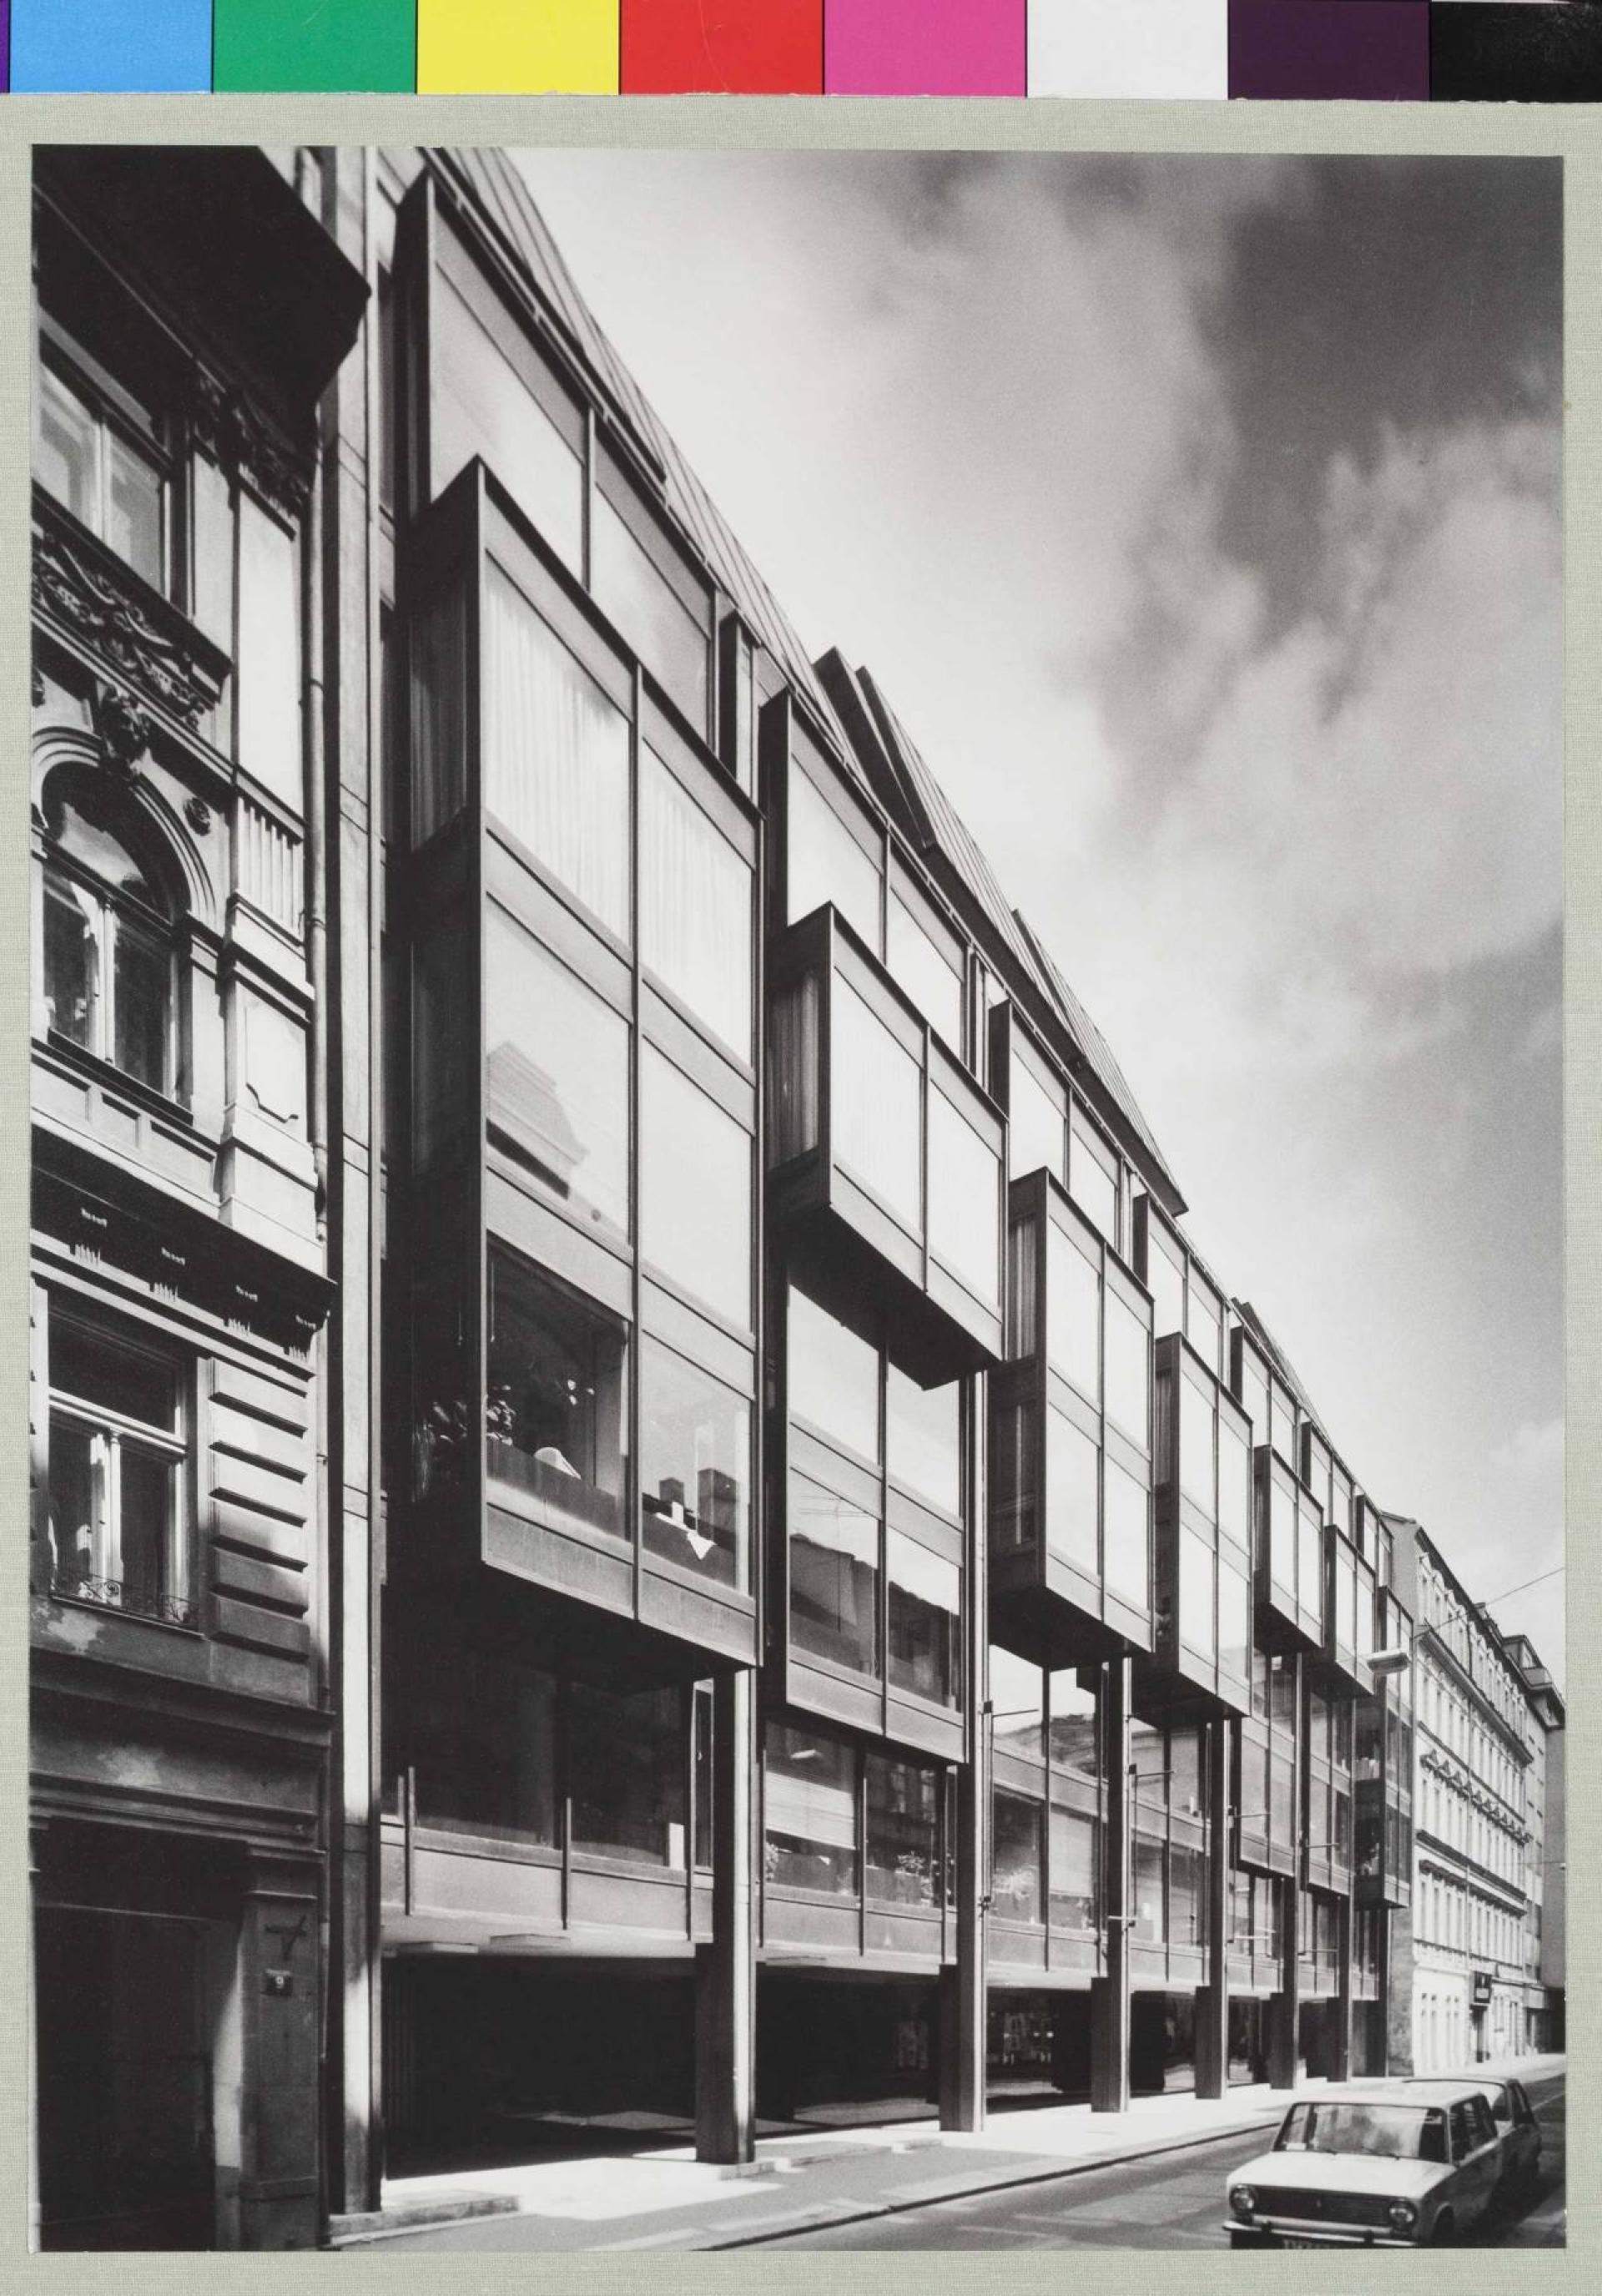 Omnipol Building by Zdeněk Kuna, Zdeněk Stupka, Milan Valenta, Josef Zdražil, Ladislav Vrátník (1974–1979) | Photo © Kamil Warta, National Gallery Prague